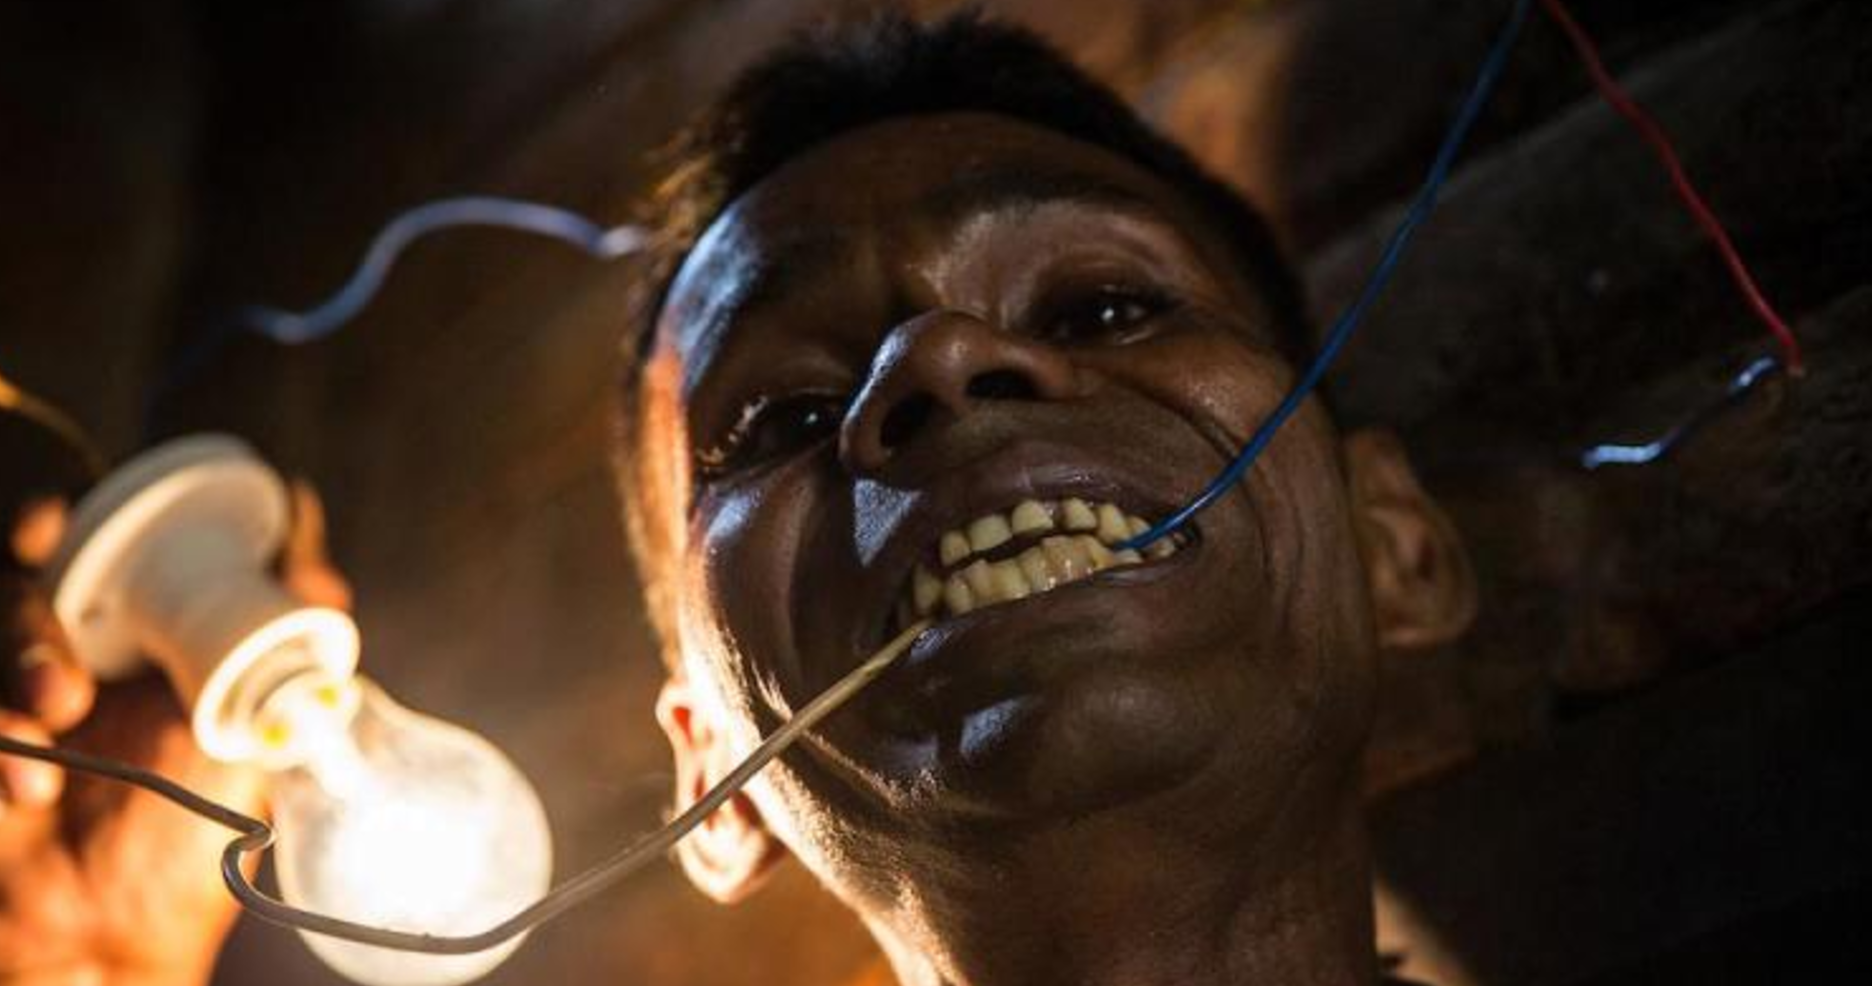 Βίντεο: Άνδρας από την Ινδία τρέφεται με ηλεκτρισμό